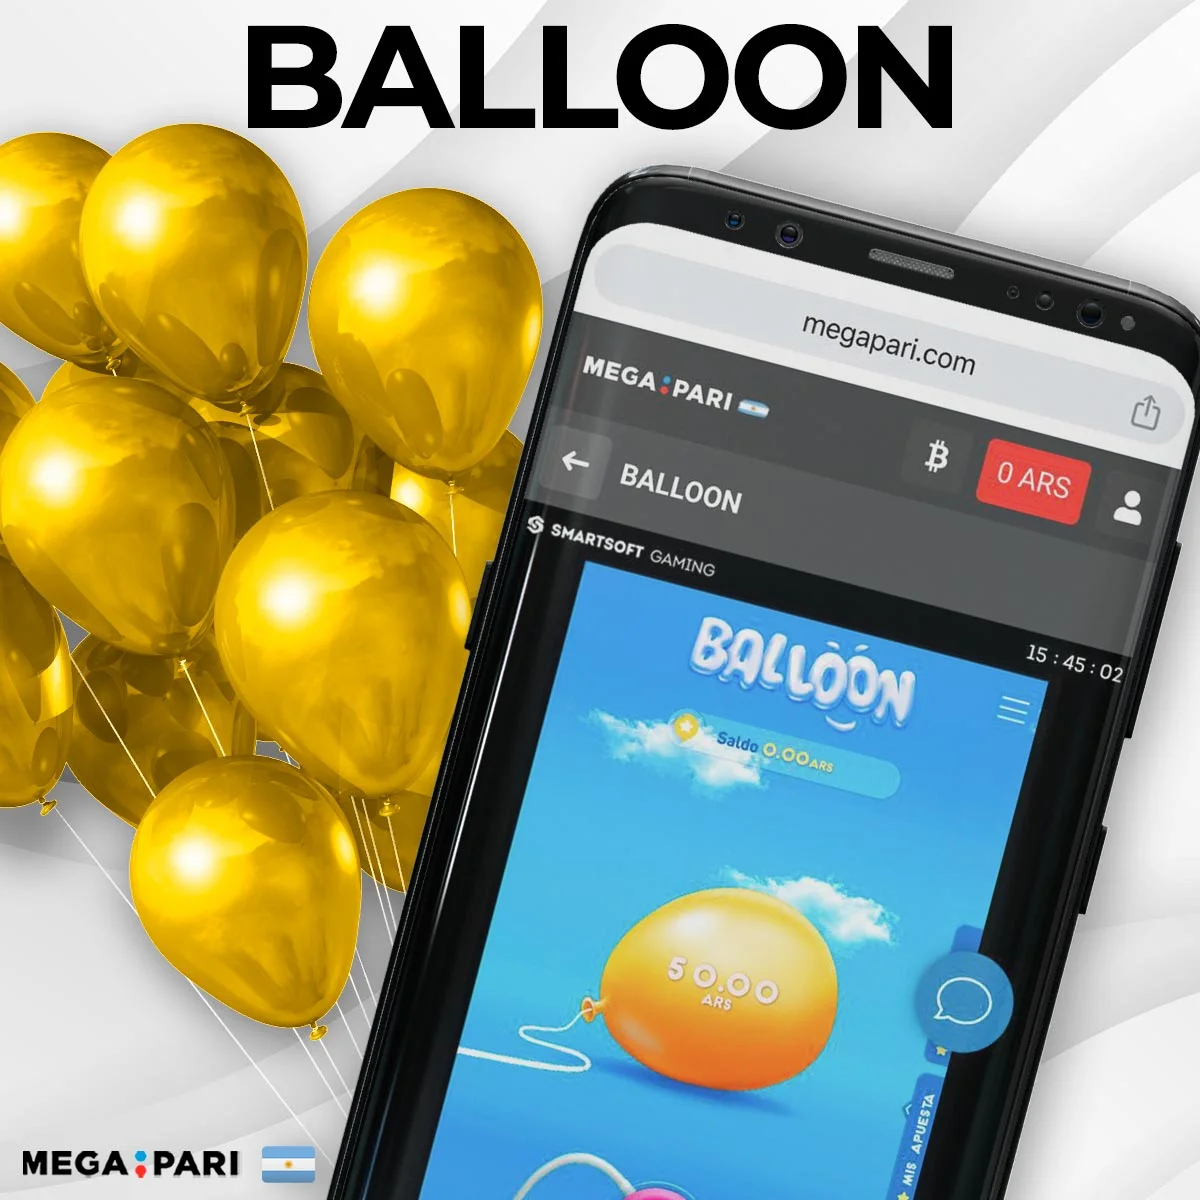 Acerca de Balloon Megapari